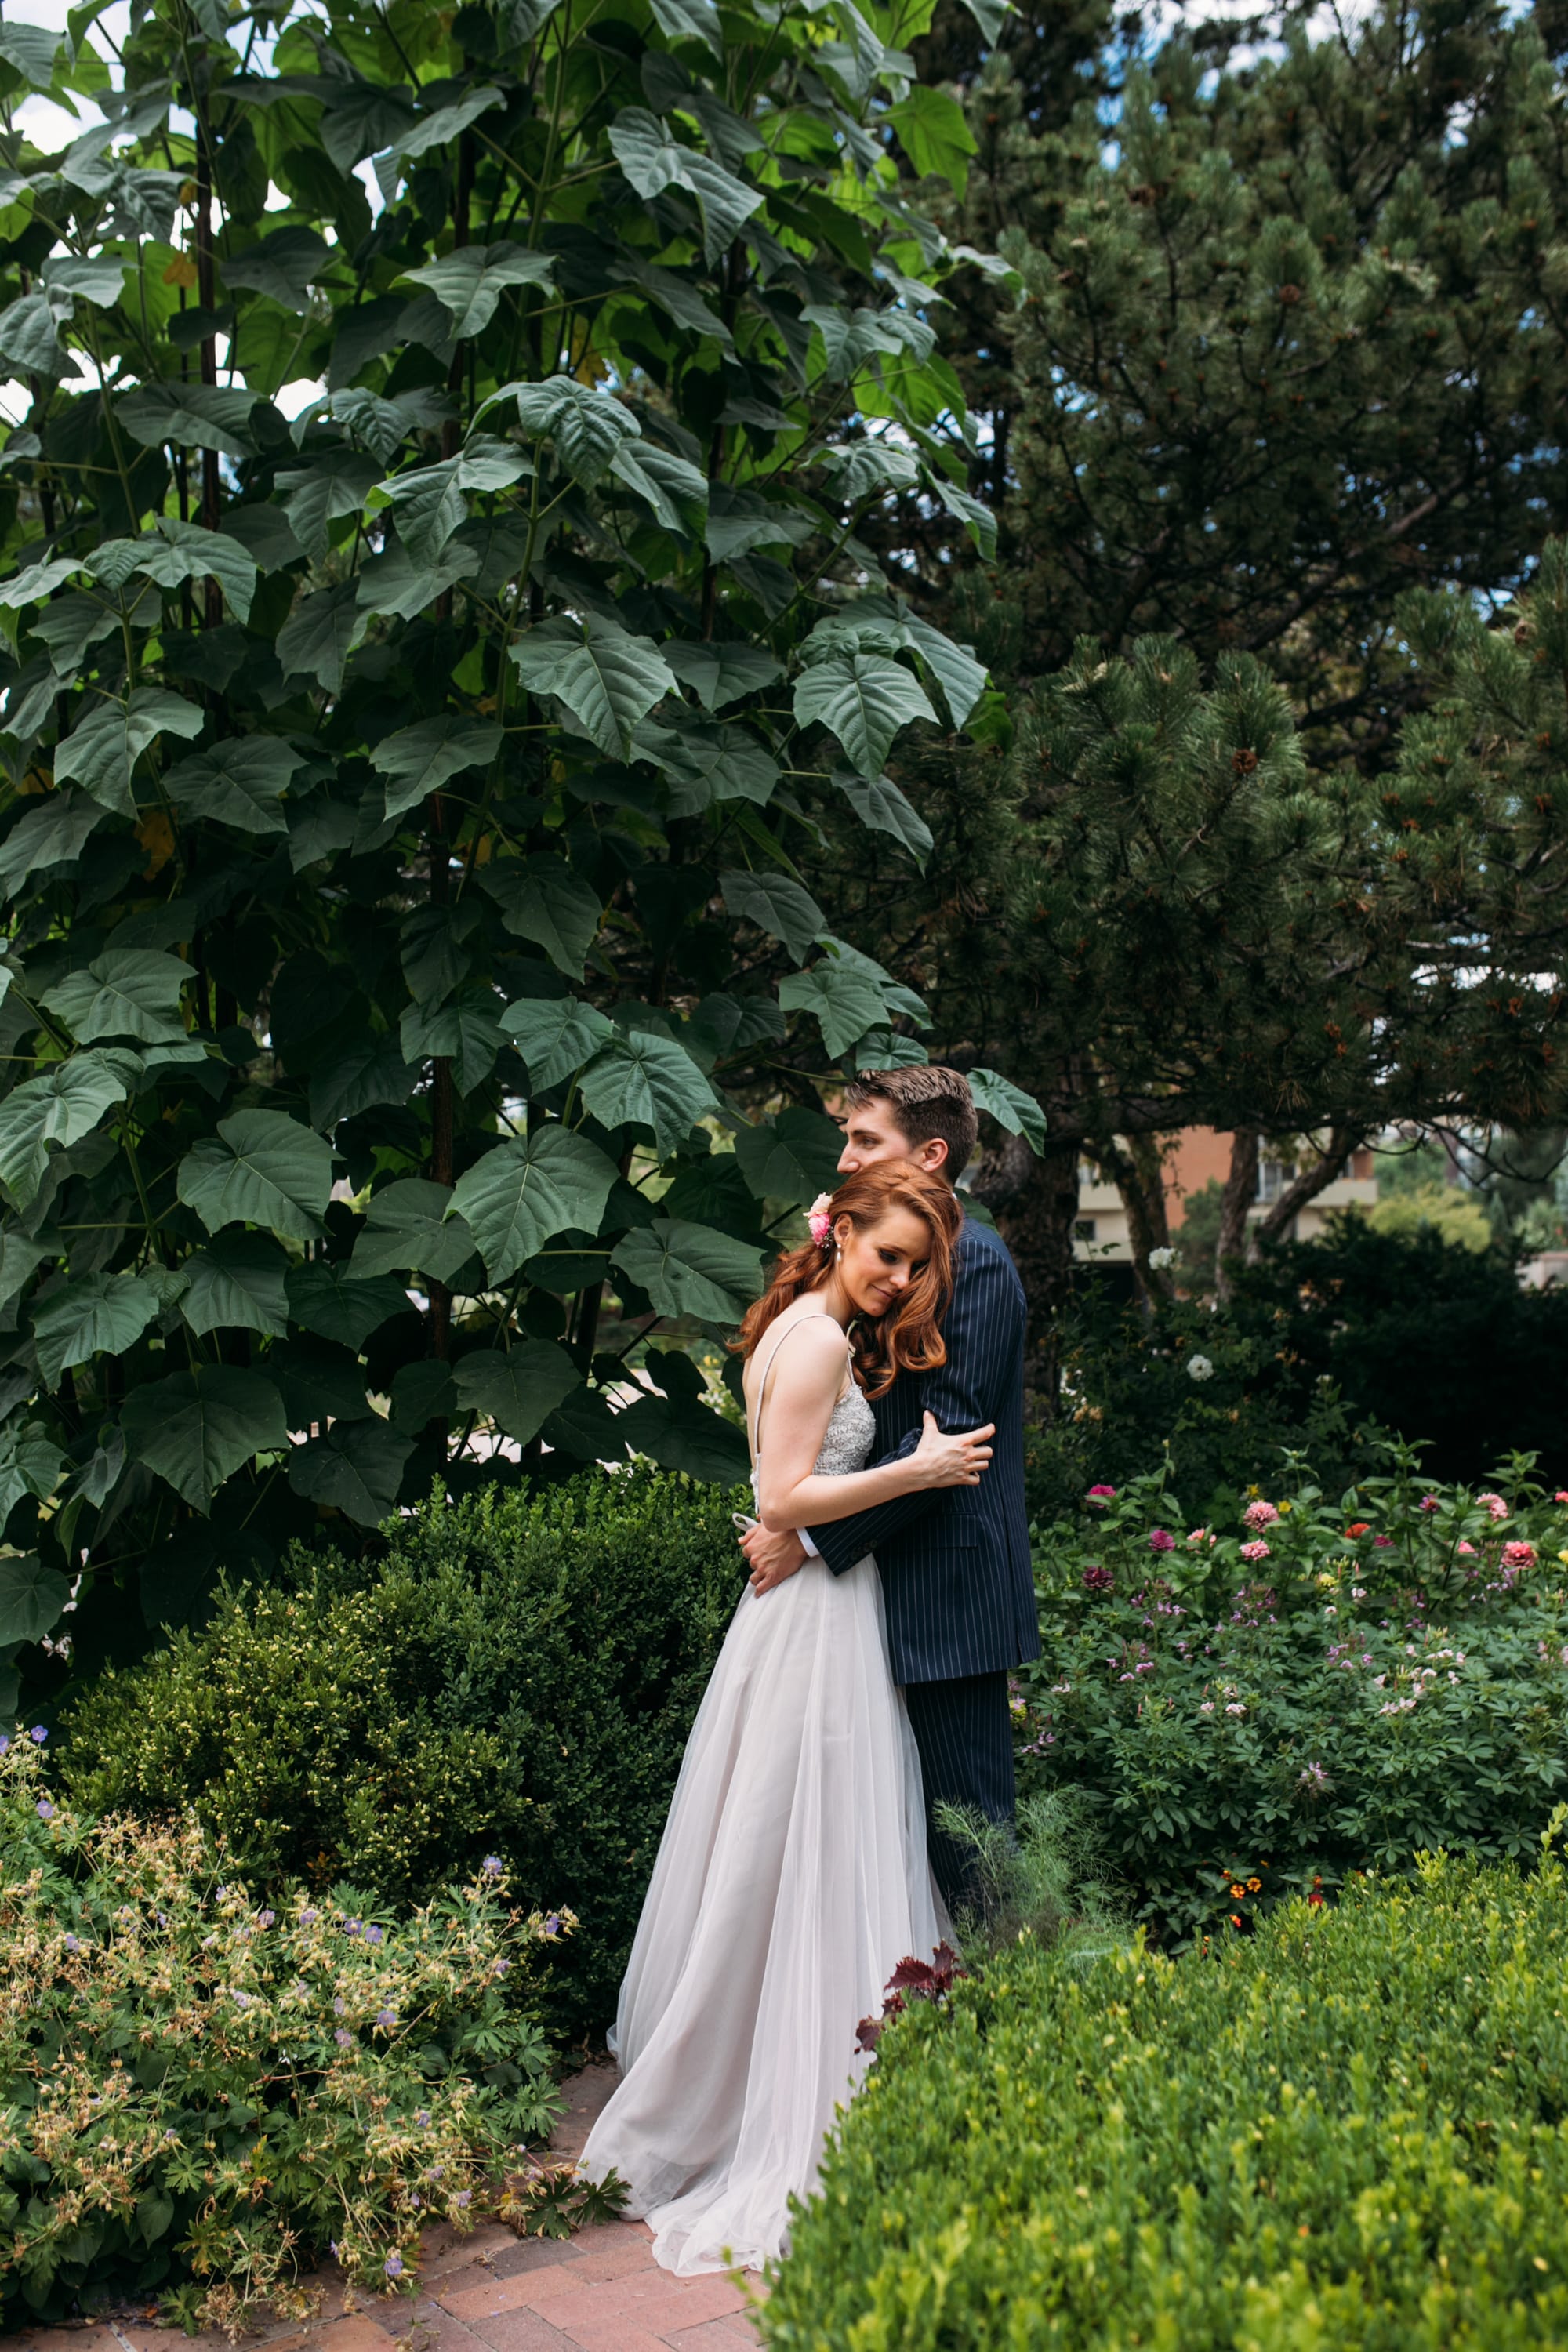 denver wedding photographer, denver wedding venue, denver botanic gardens wedding, red head bride